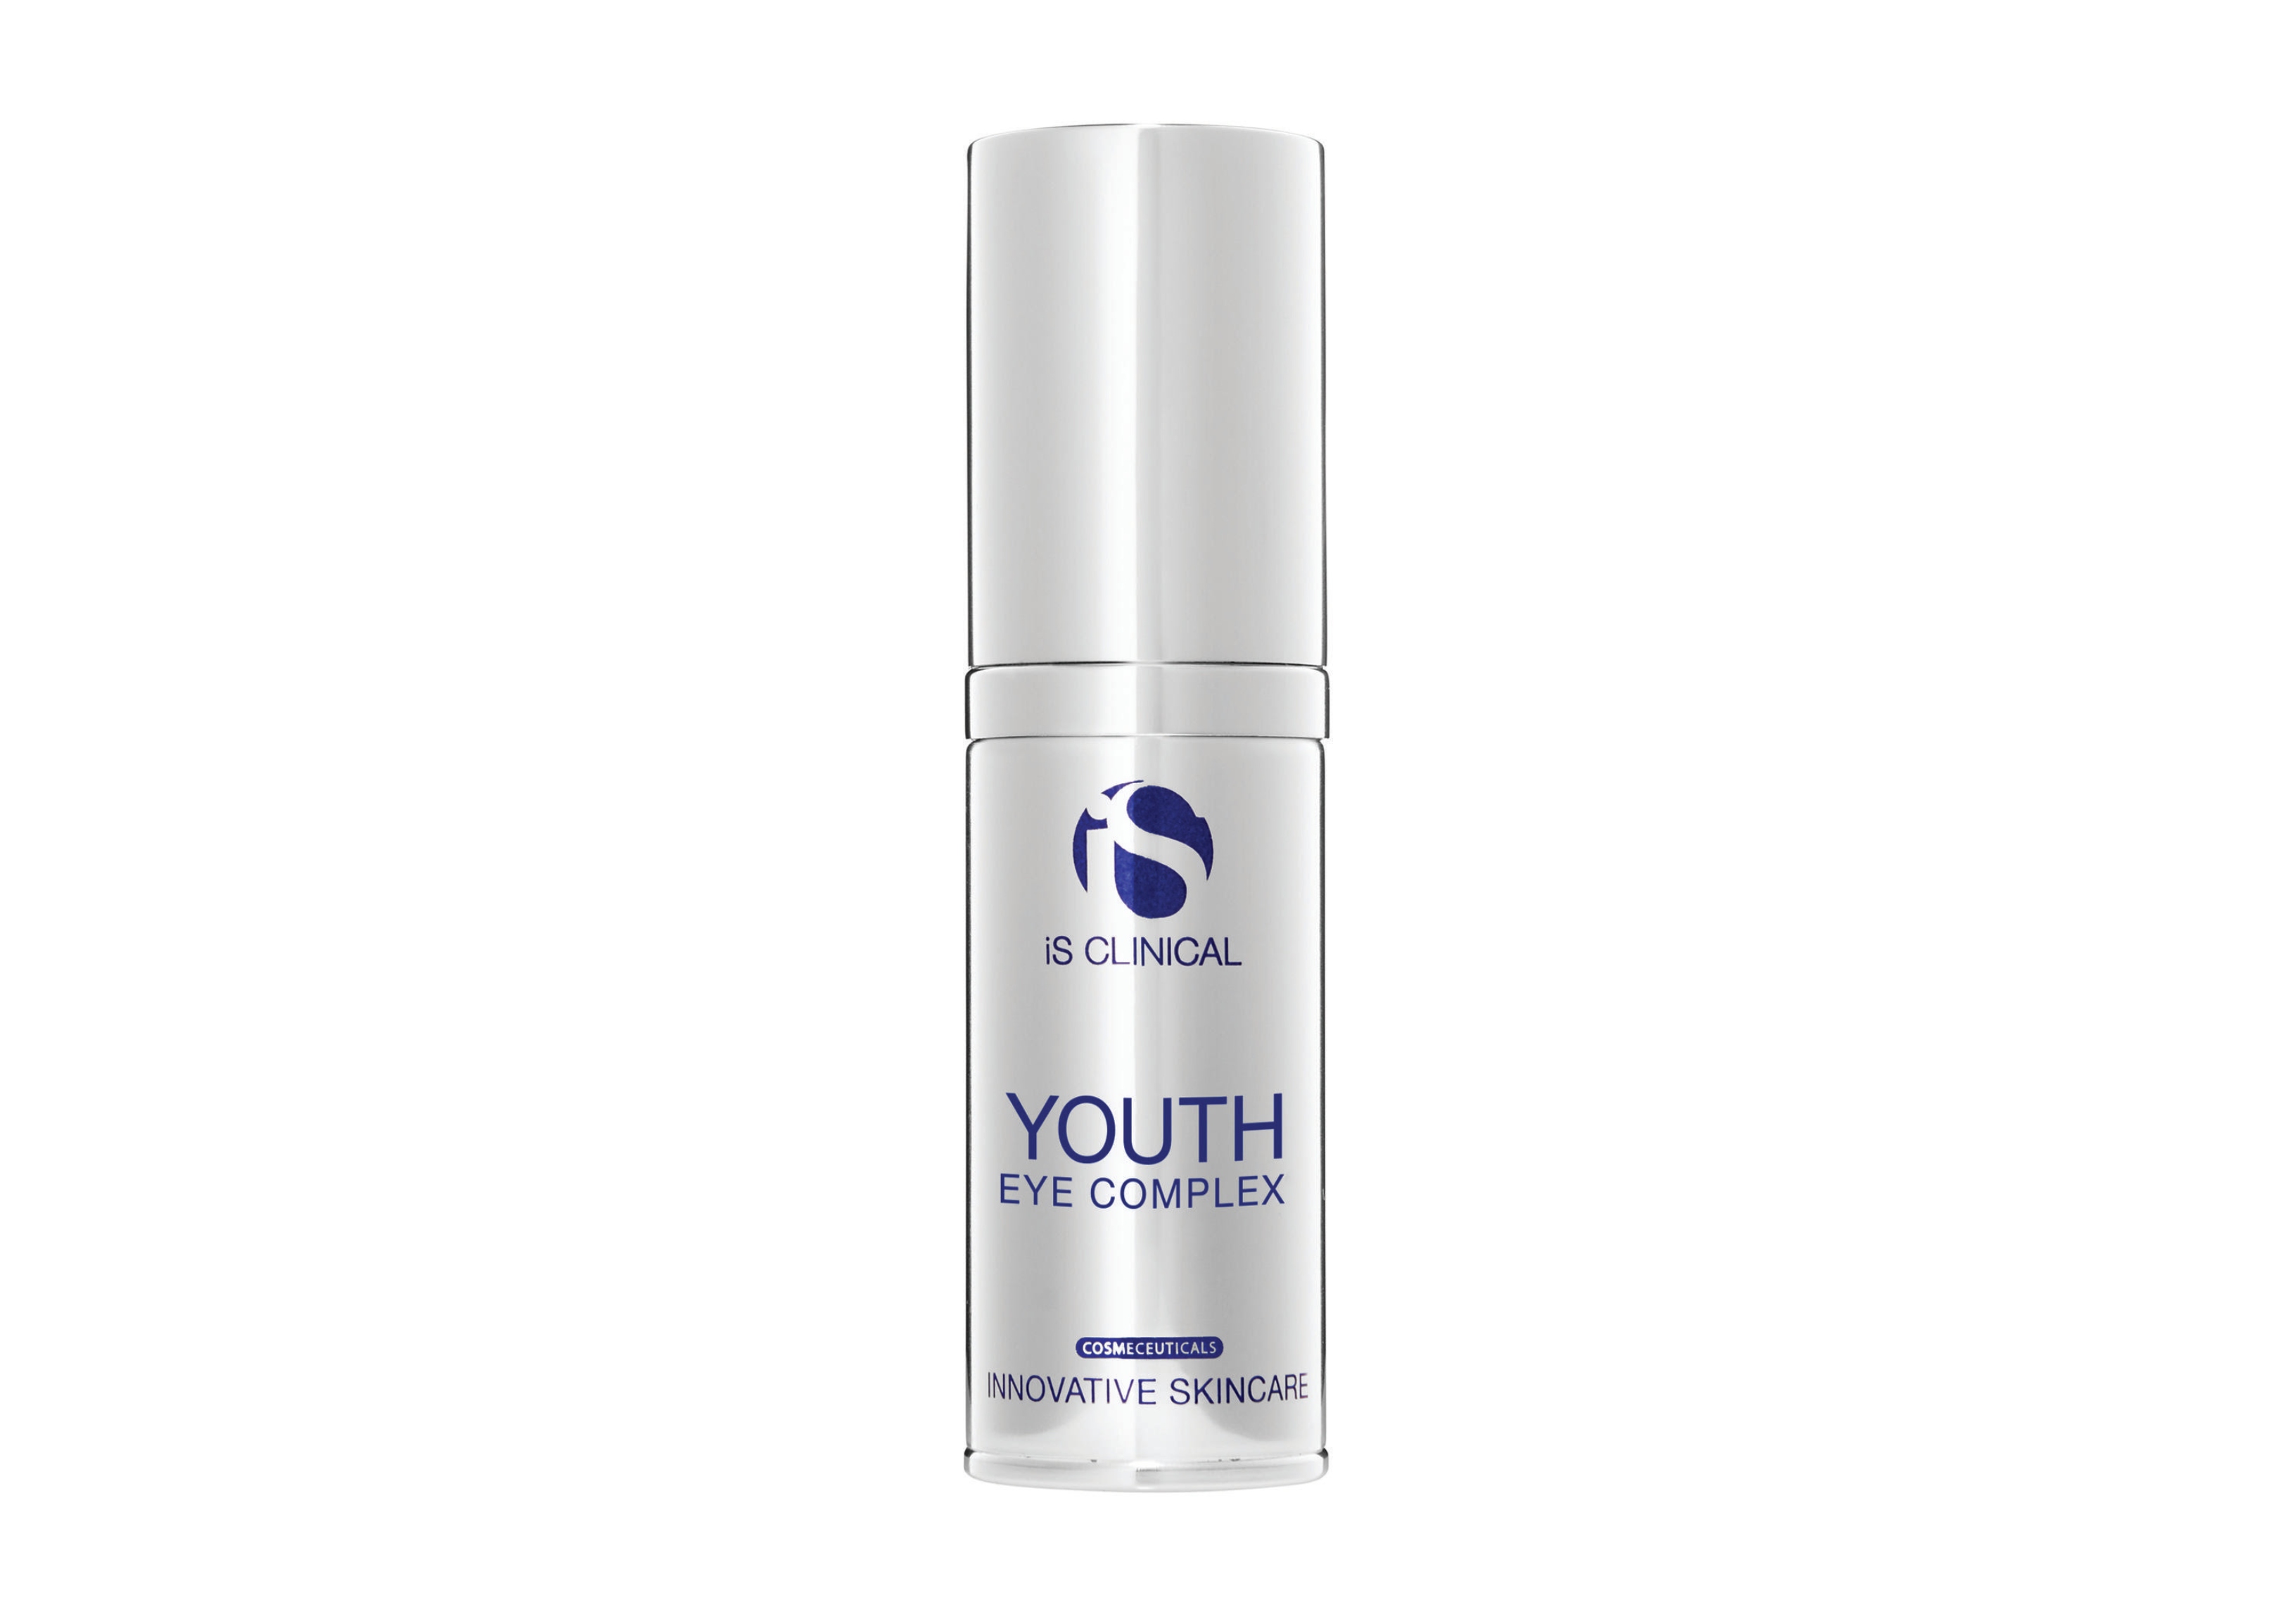 iSClinical 'Youth Eye Complex' eye cream